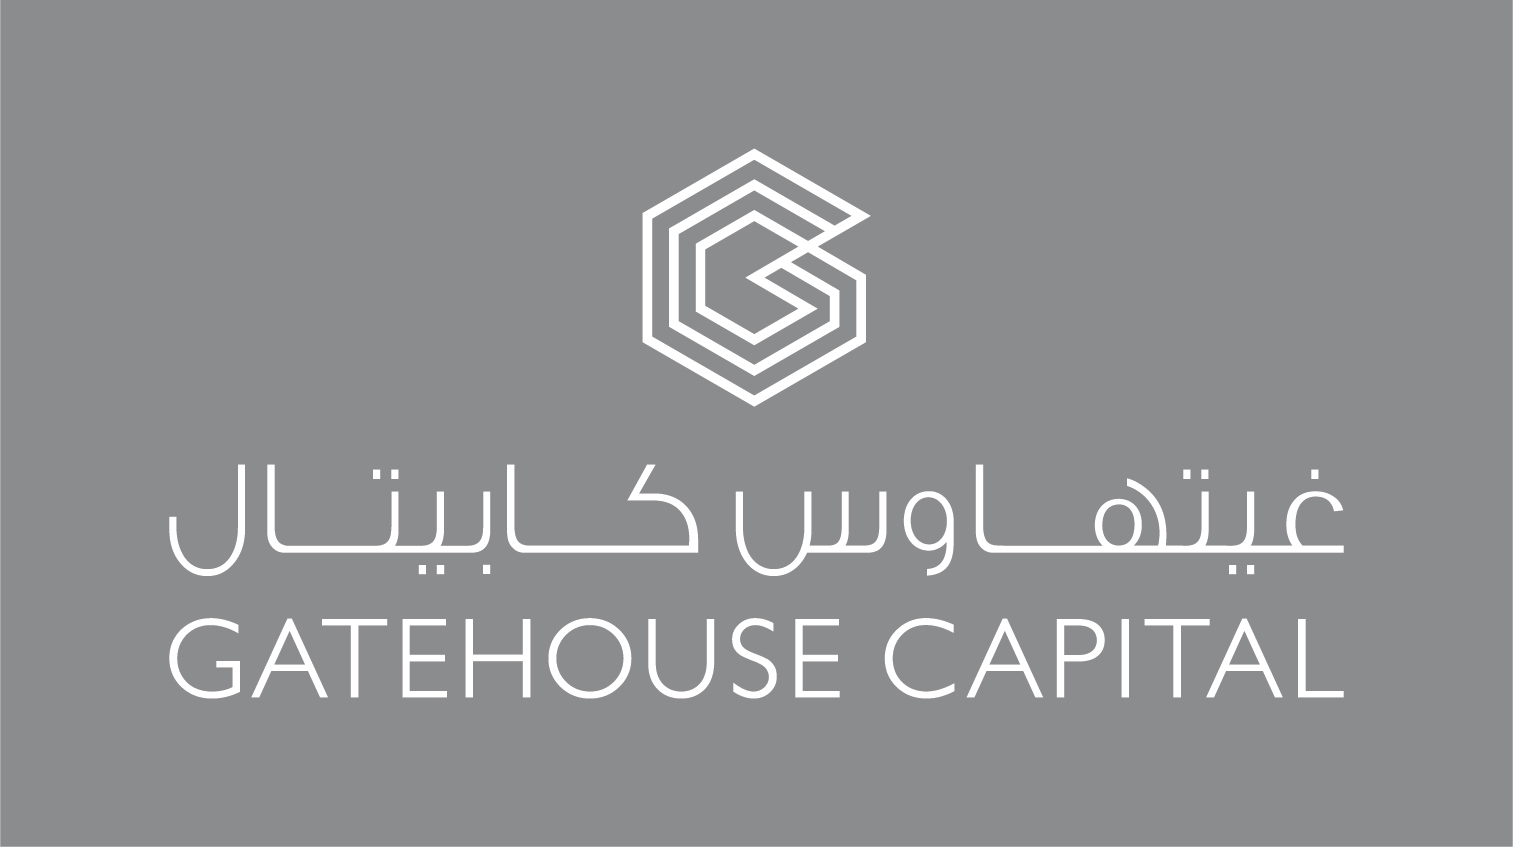 Gatehouse Capital